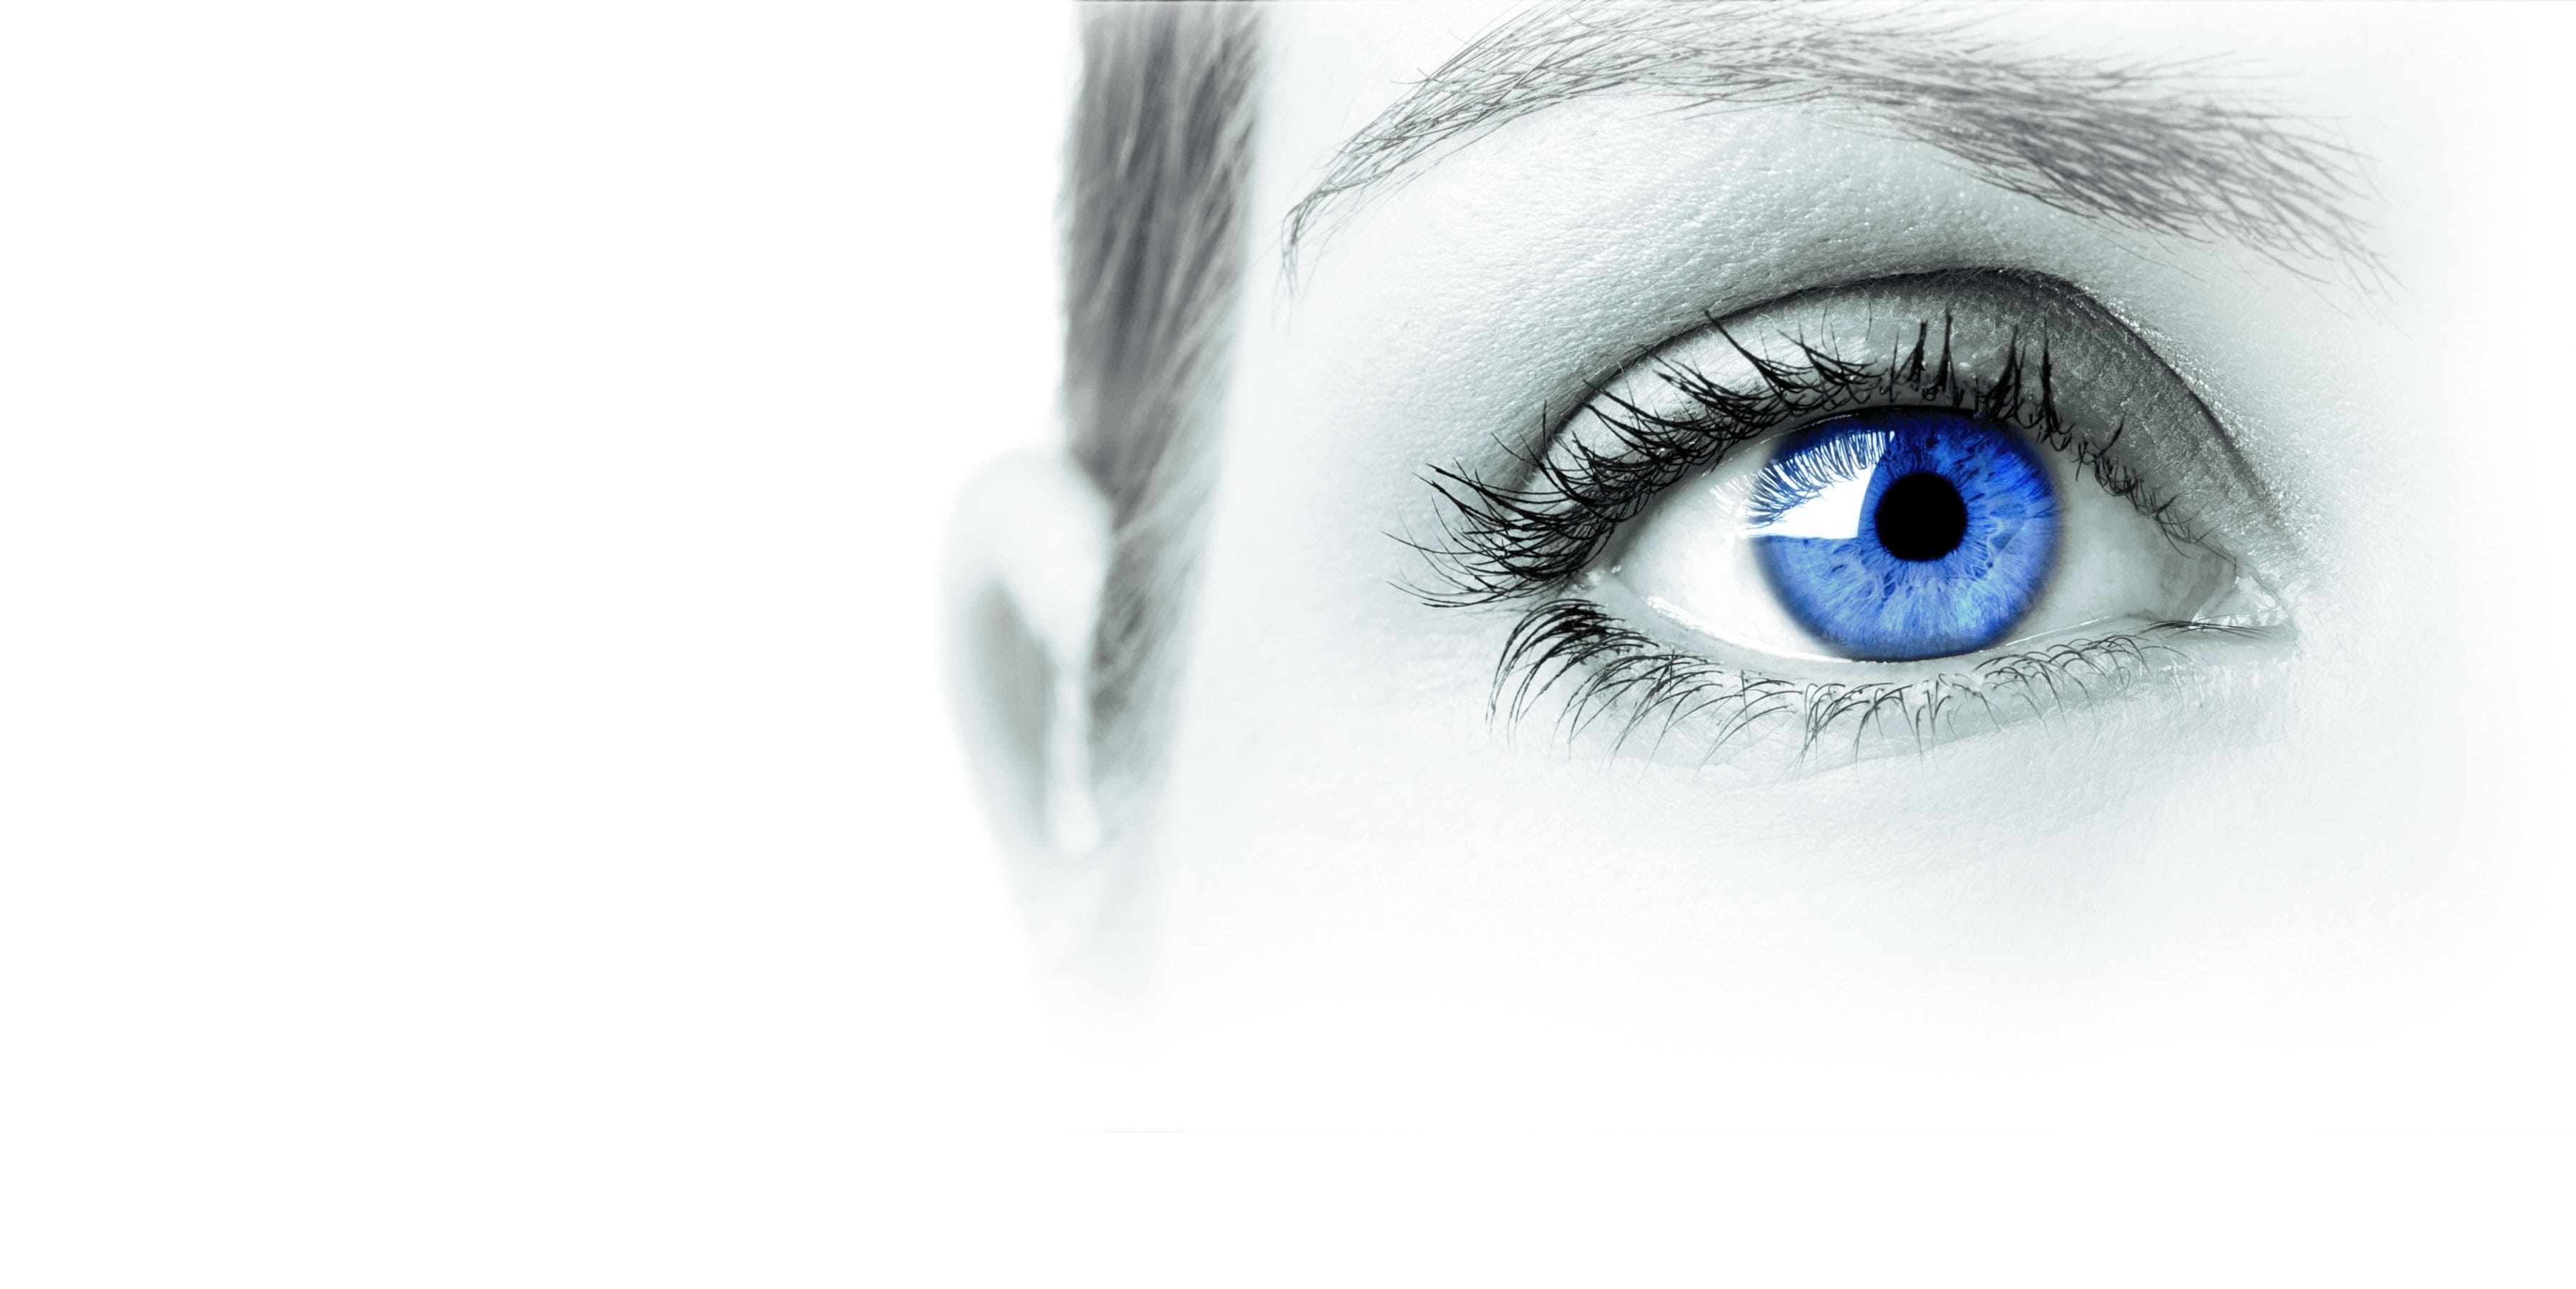 Kopfgrafik Kategorie diagnostische Augenprodukte. Blaues Auge einer Frau.